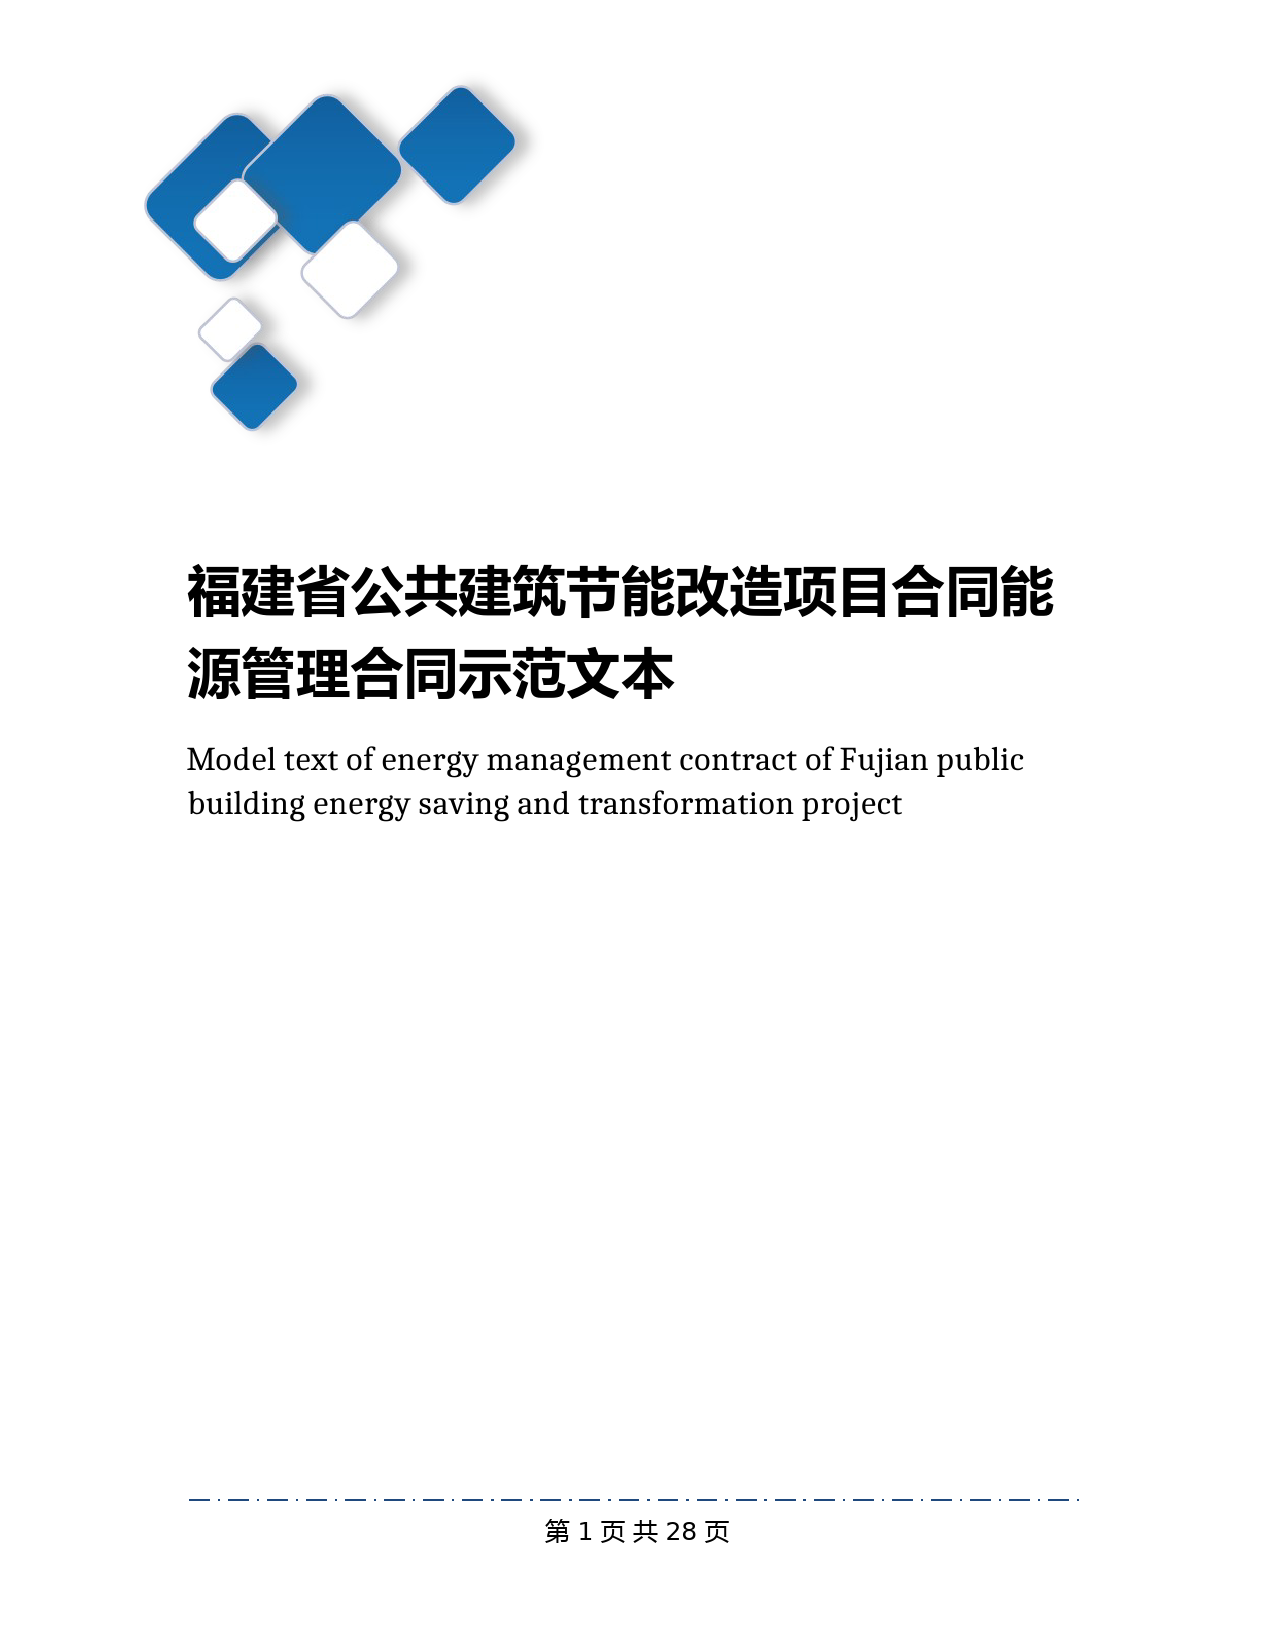 福建省公共建筑节能改造项目合同能源管理合同示范文本